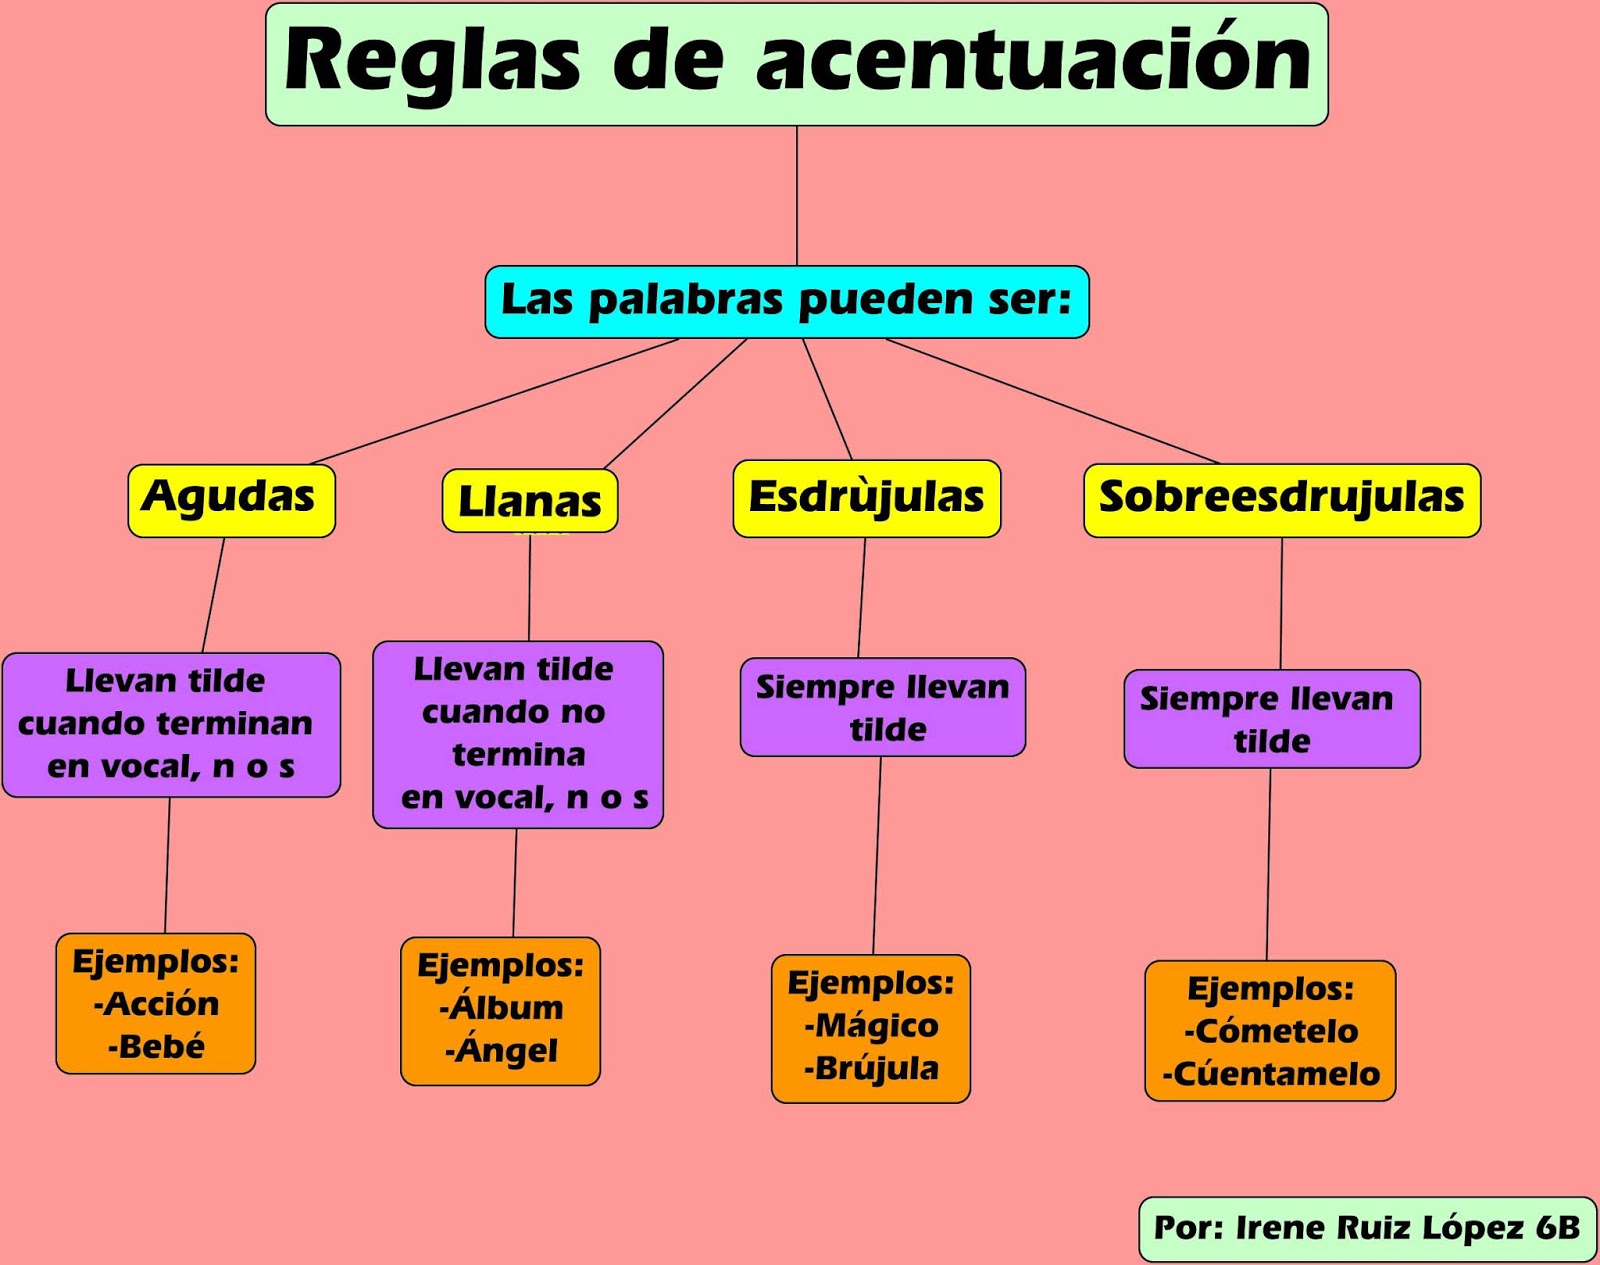 View Cuadro Sinoptico De Las Reglas De Acentuacion Gif Ales Mapa | My ...